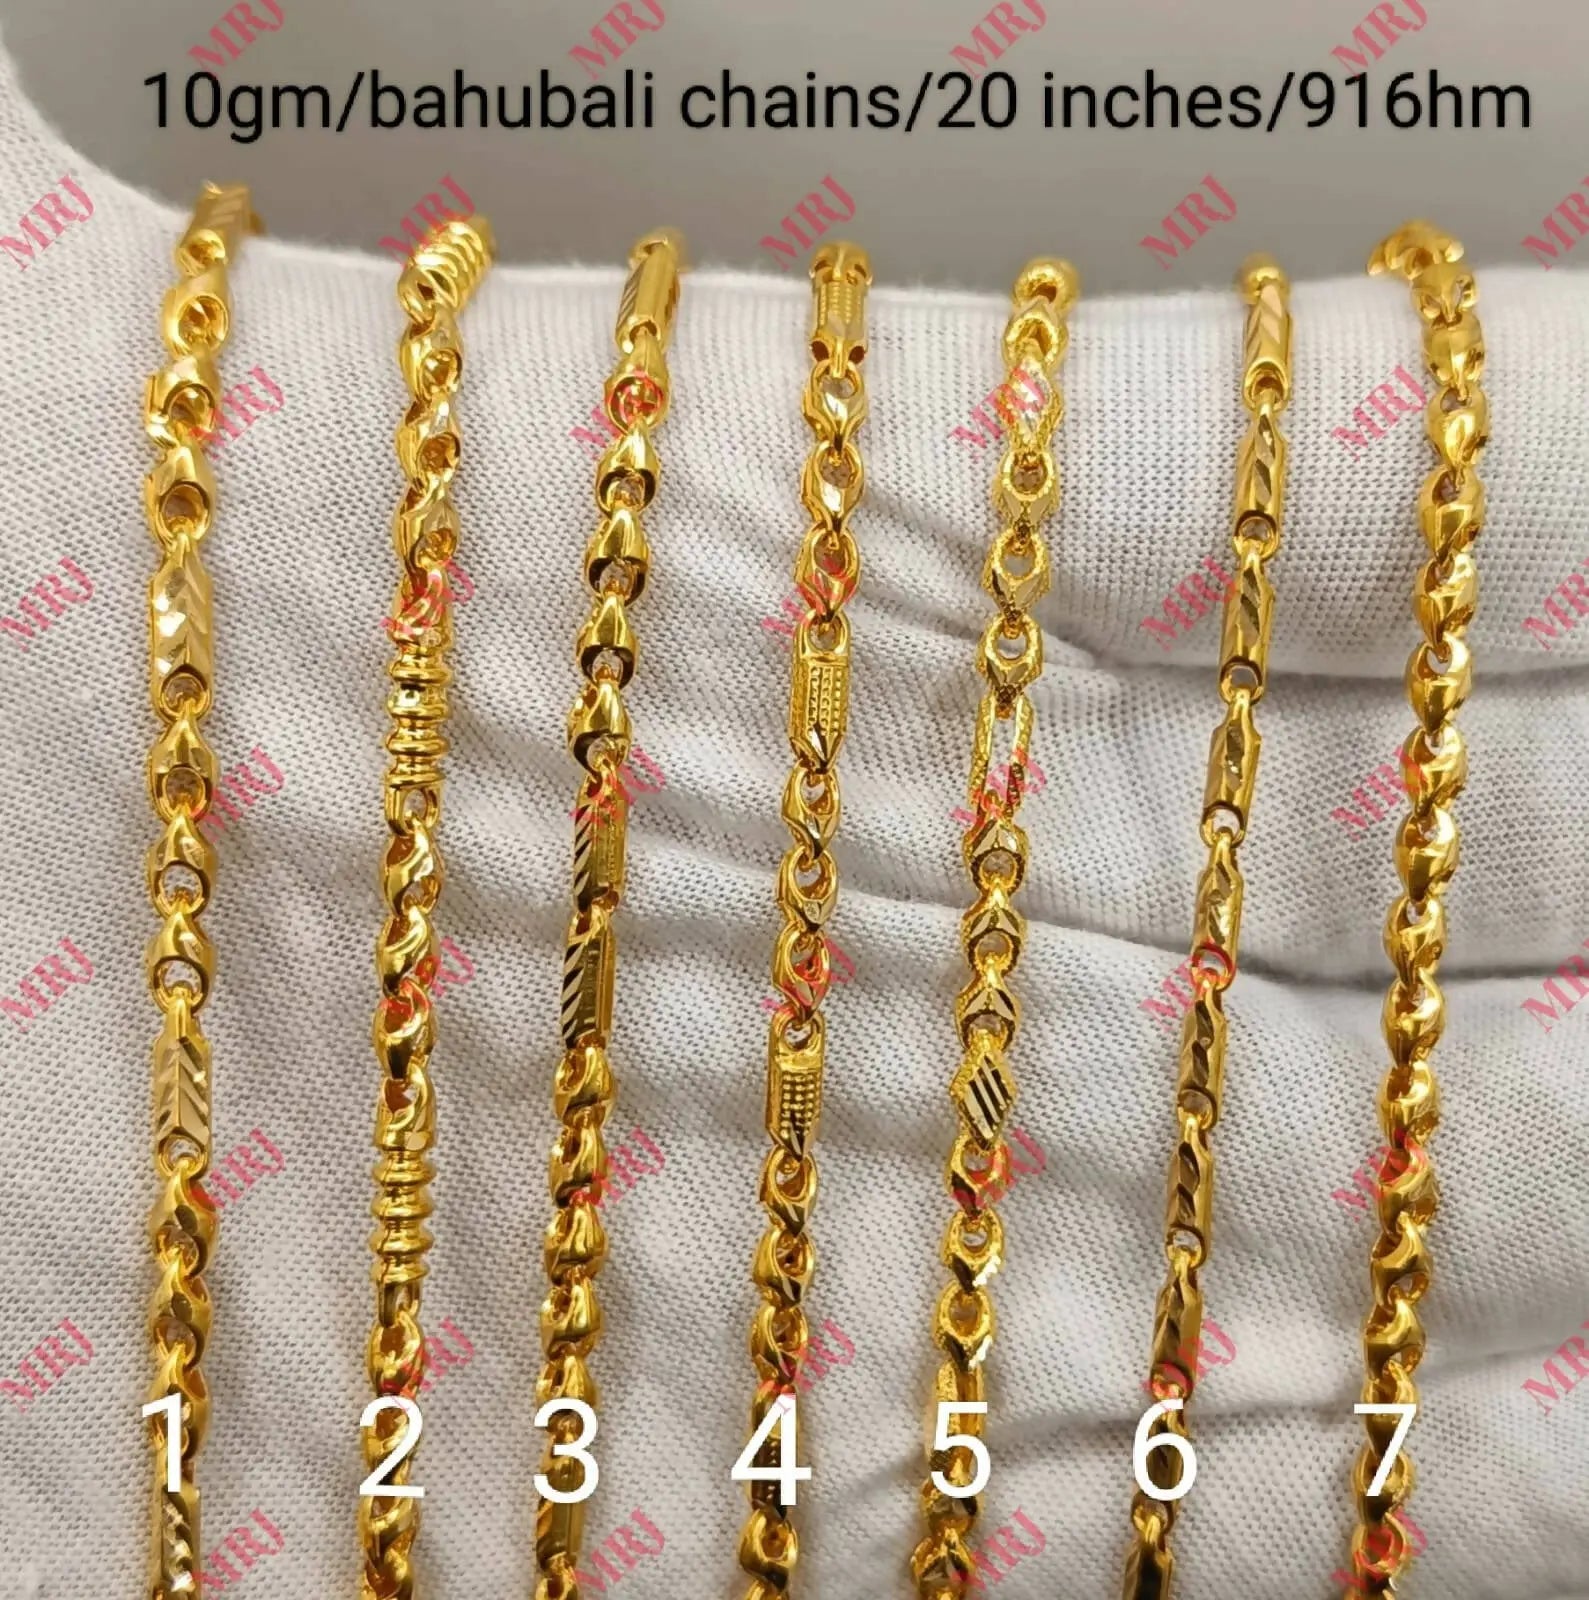 Bahubali Chains Sarafa Bazar India